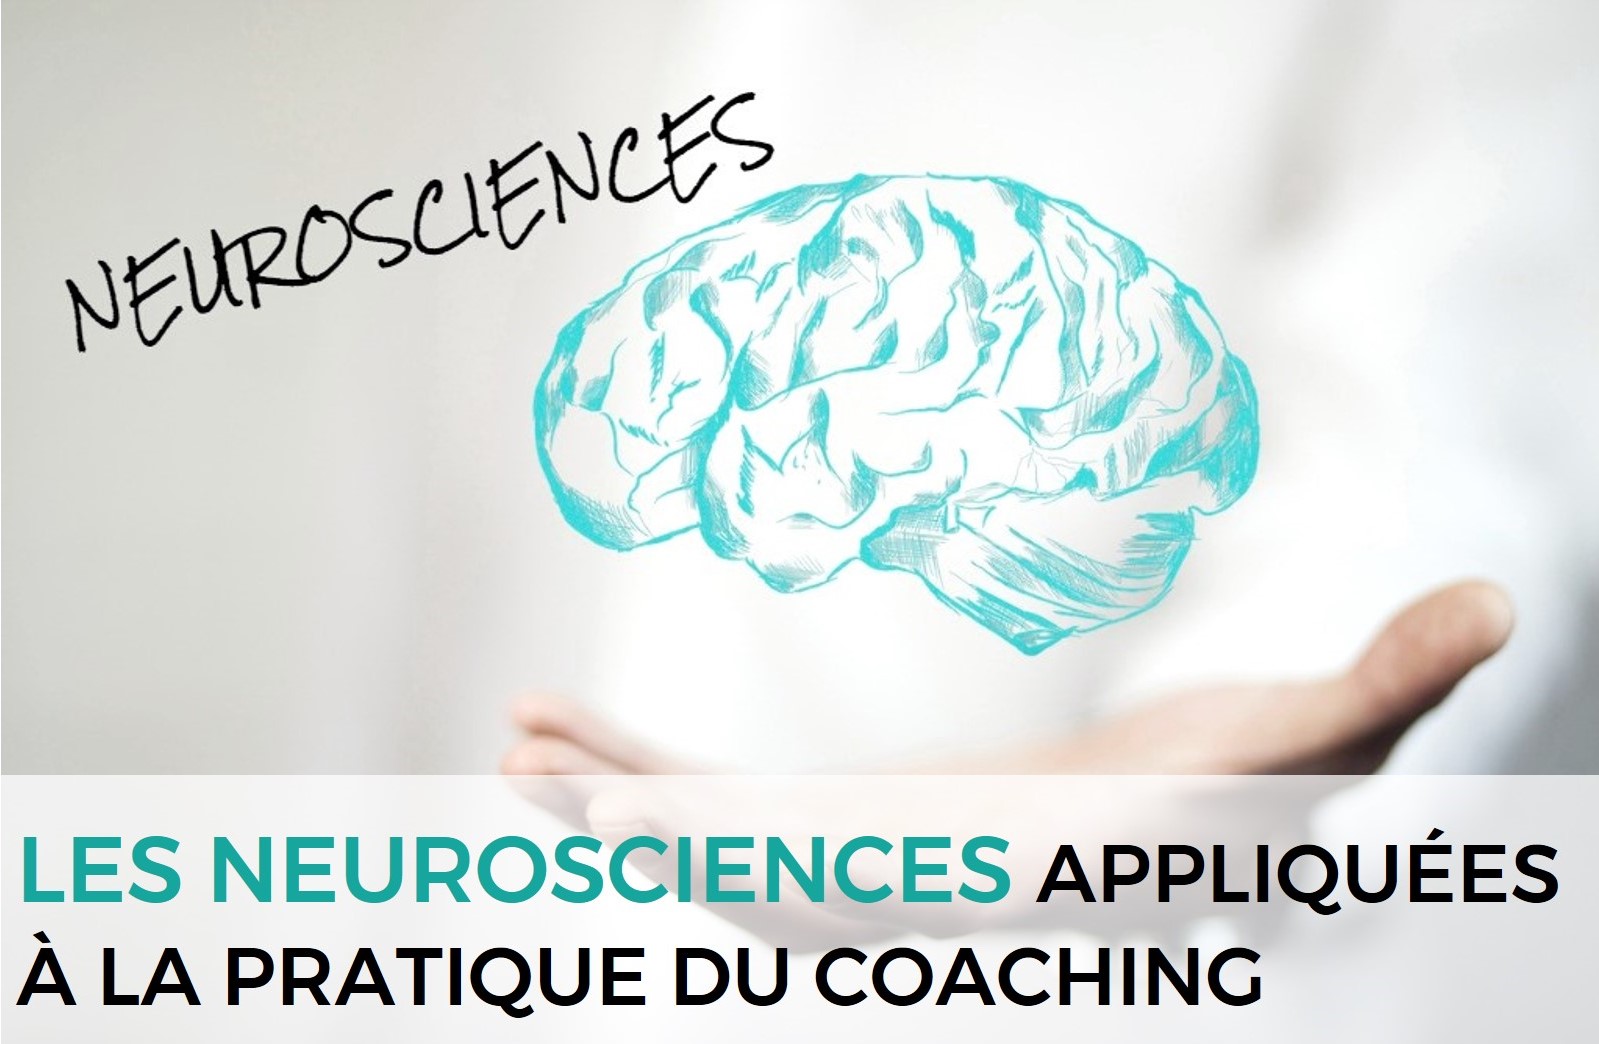 Les neurosciences appliquées à la pratique du coaching